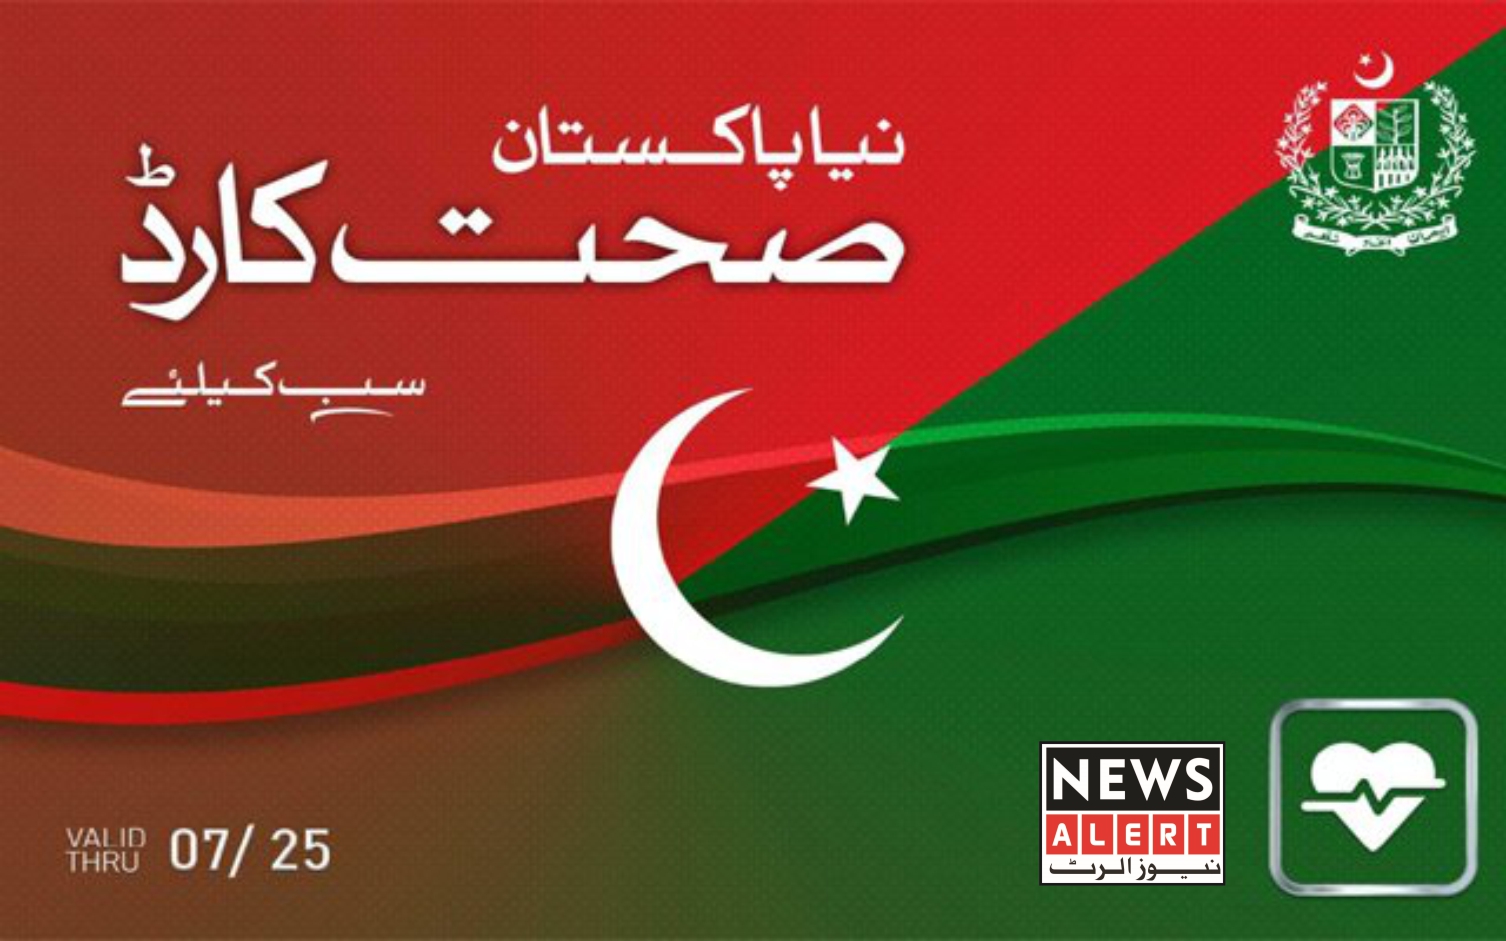 پاکستانی عوام کو صحت کارڈ جیسی سہولت سے فائدہ اُٹھانا چاہیے،وزیراعظم عمران خان